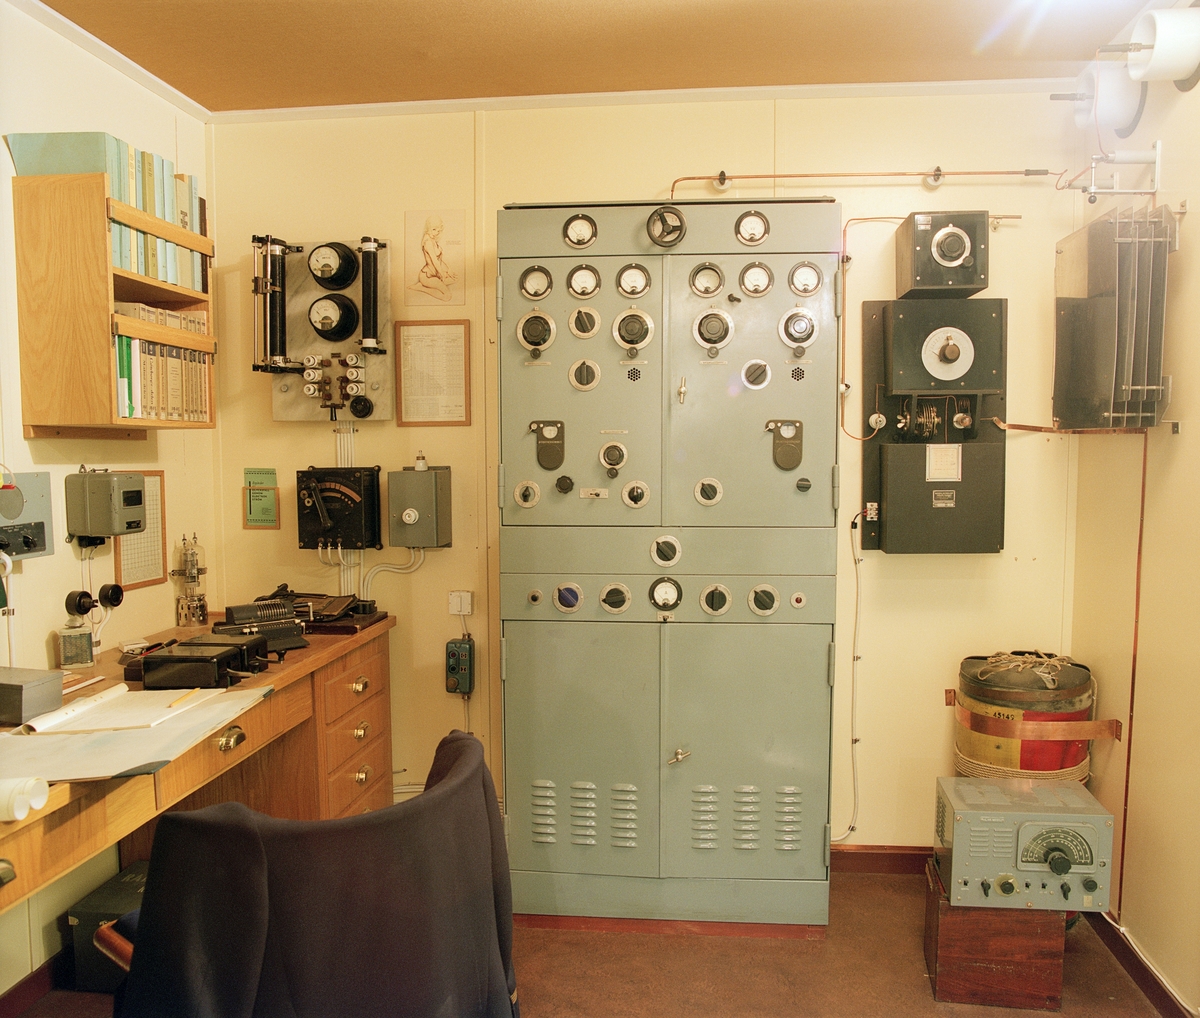 Dokumentation av Telemuseums utställningar innan rivning och museets nedläggning.

1940-tals radiohytt